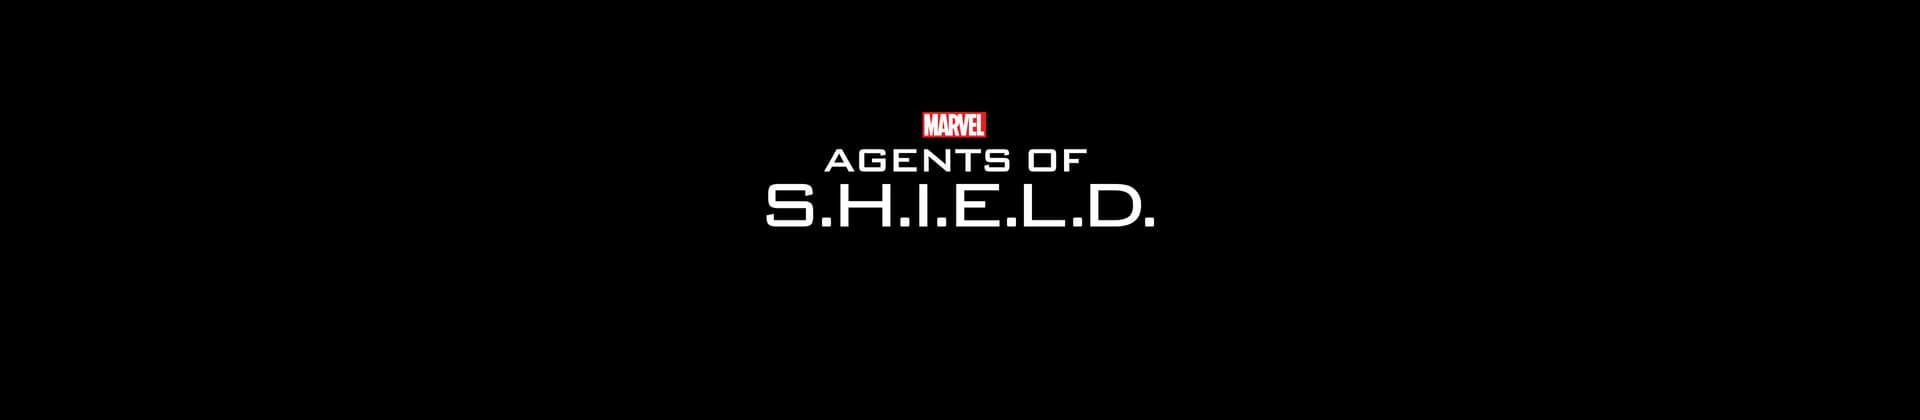 Marvel's Agents of S.H.I.E.L.D. TV Show Logo On Black